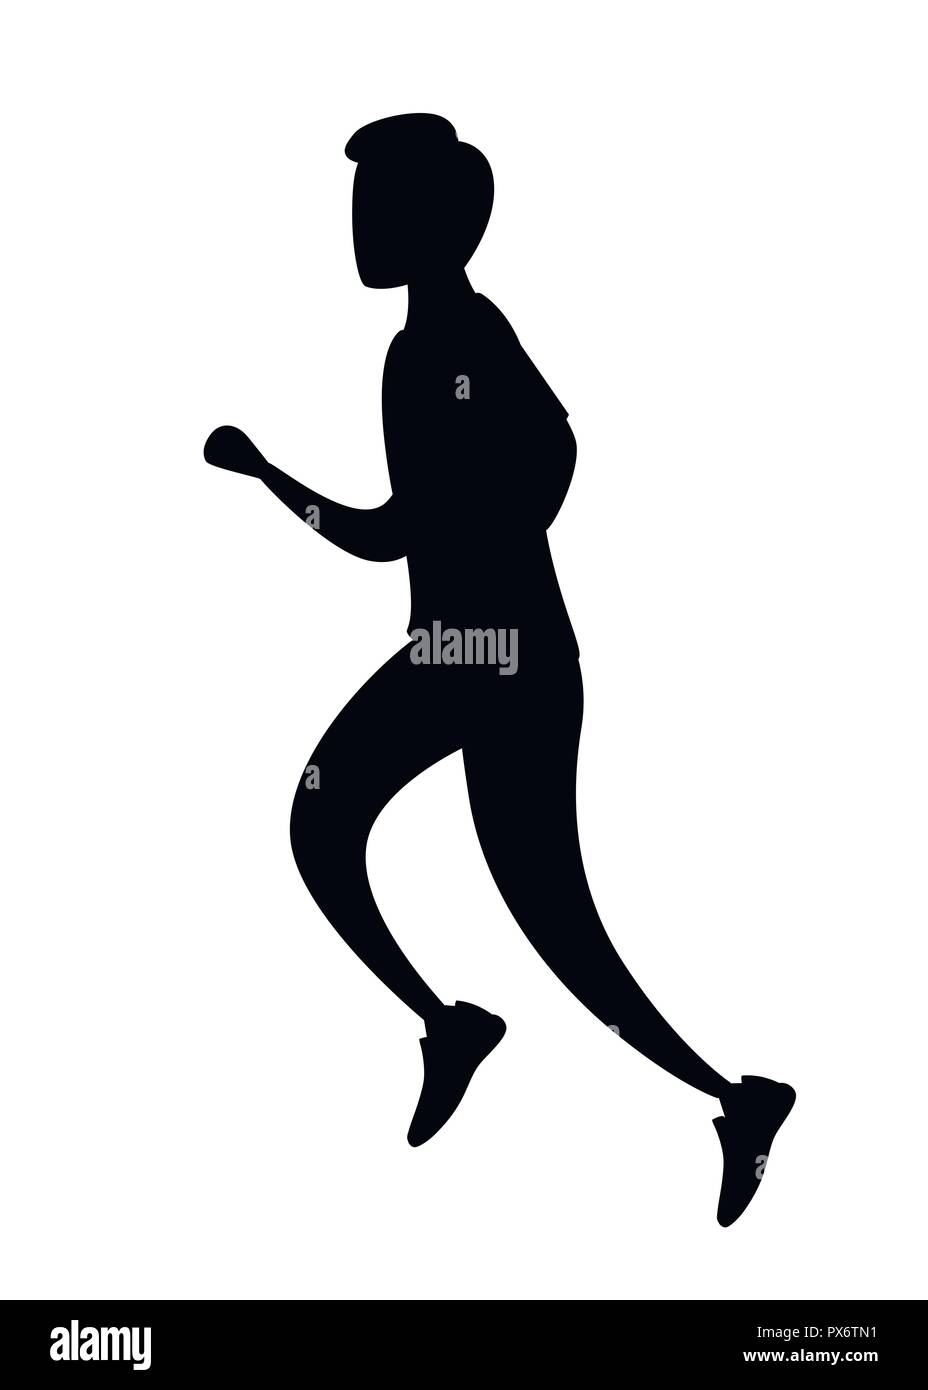 Schwarze Silhouette. Mann im Sport Laufbekleidung. Kein Gesicht Cartoon Character Design. Flache Vector Illustration auf weißem Hintergrund. Stock Vektor